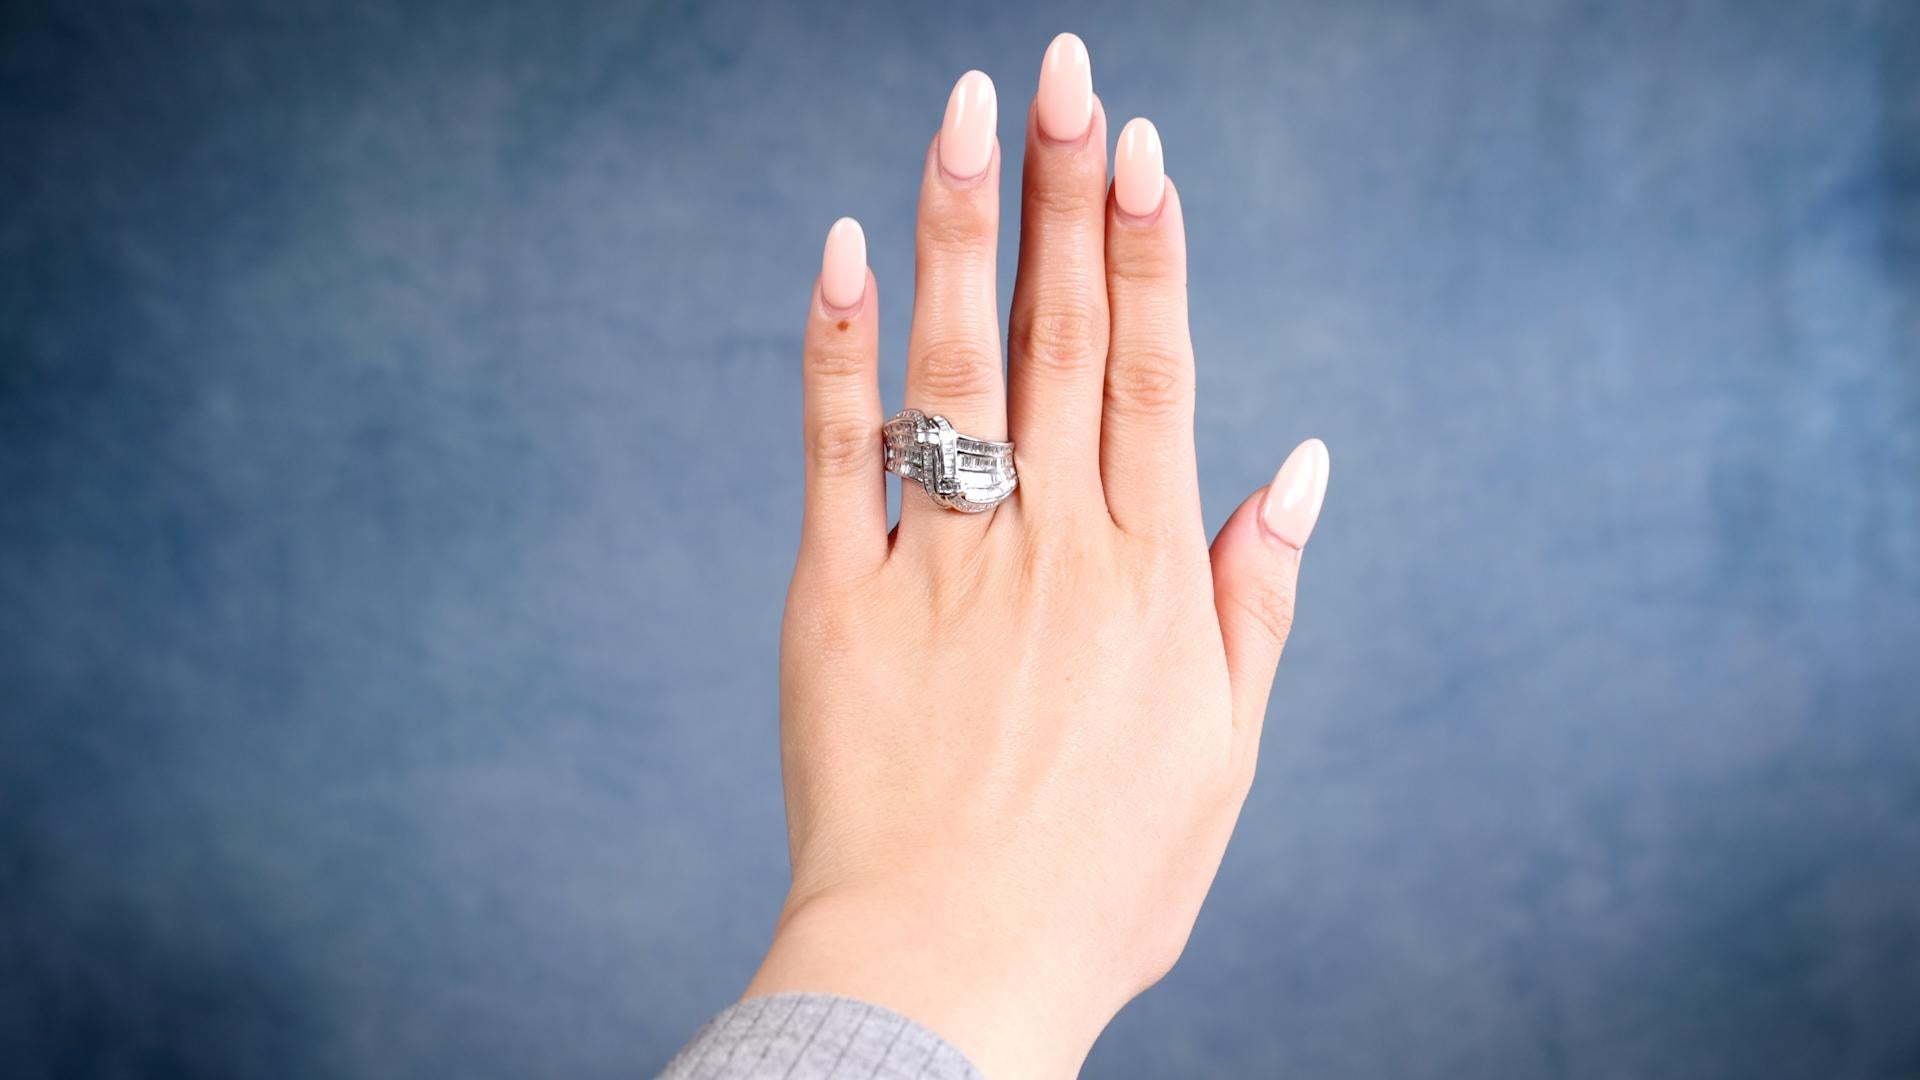 Ein Vintage Diamond 18k Weißgold Ring. Mit 188 Diamanten im Baguetteschliff mit einem Gesamtgewicht von ca. 4,70 Karat, eingestuft in Farbe F-G und Reinheit VS. Gefertigt aus 18 Karat Weißgold mit Feingehaltsangabe. Circa 1990. Der Ring hat die